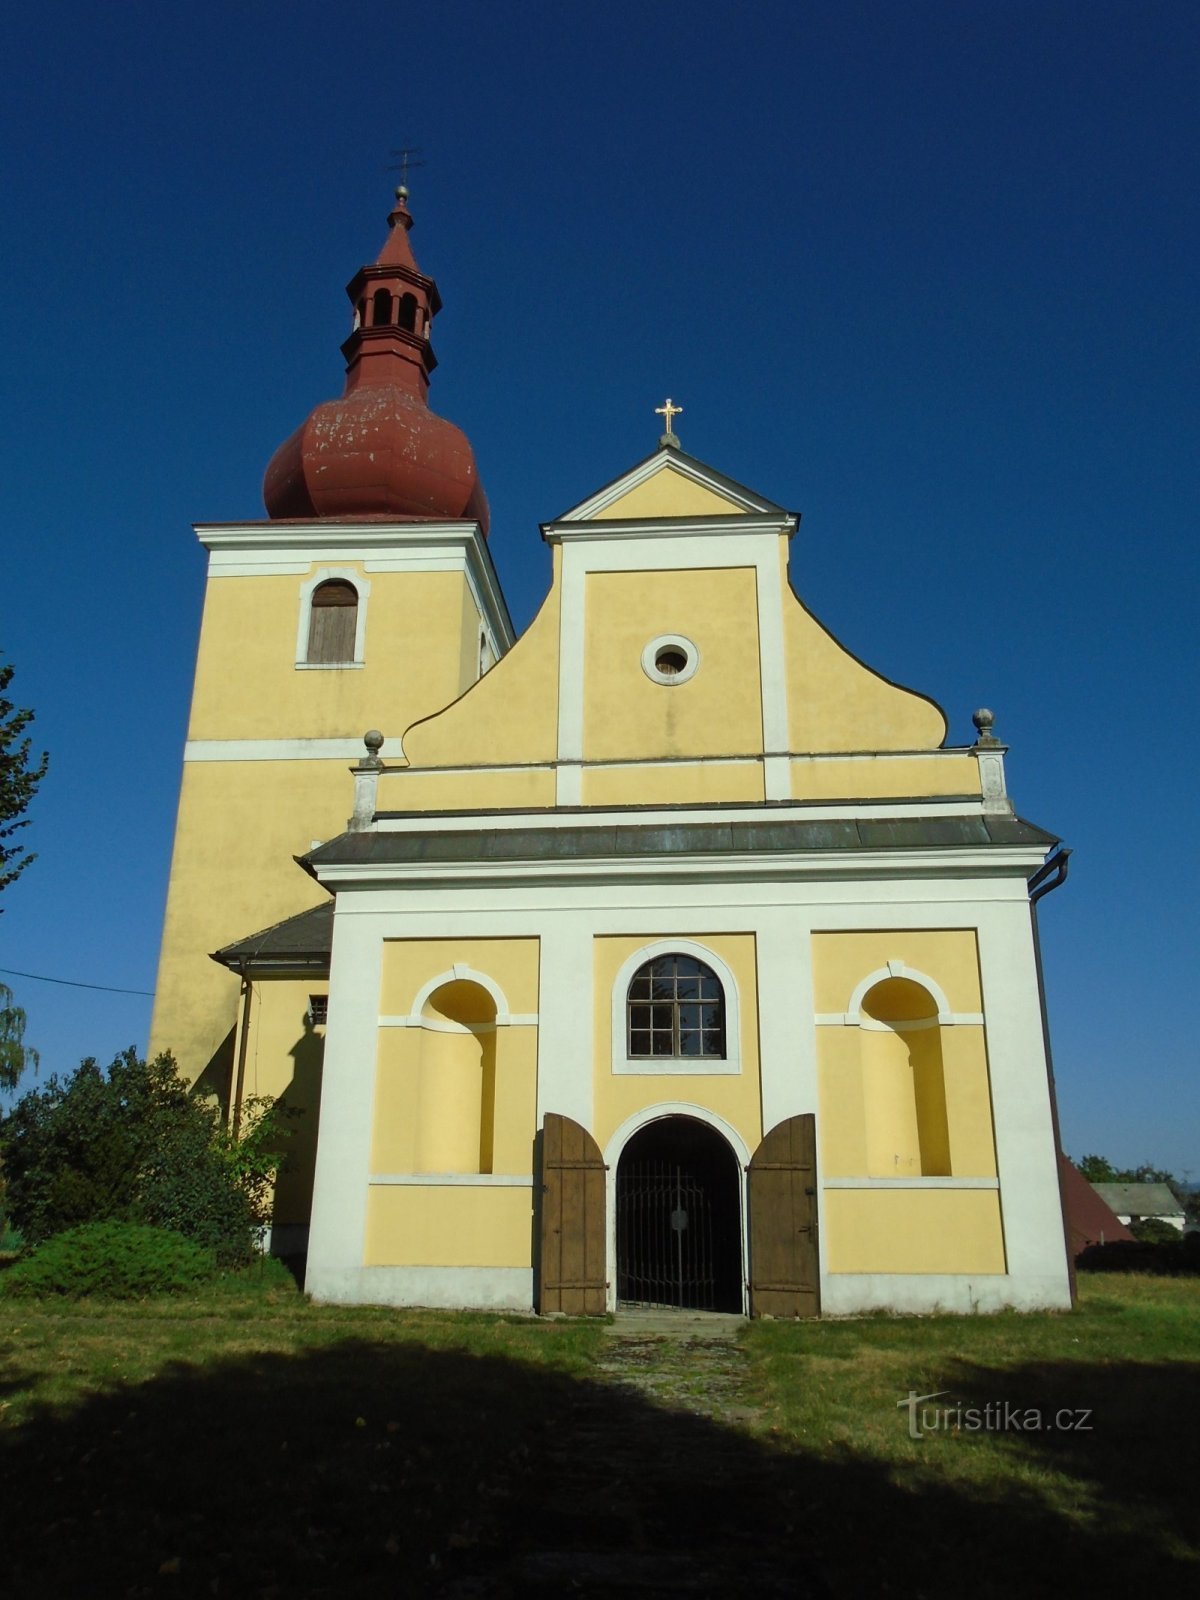 Церковь св. Стефан, первомученик Господень (Велки Тржебешов)